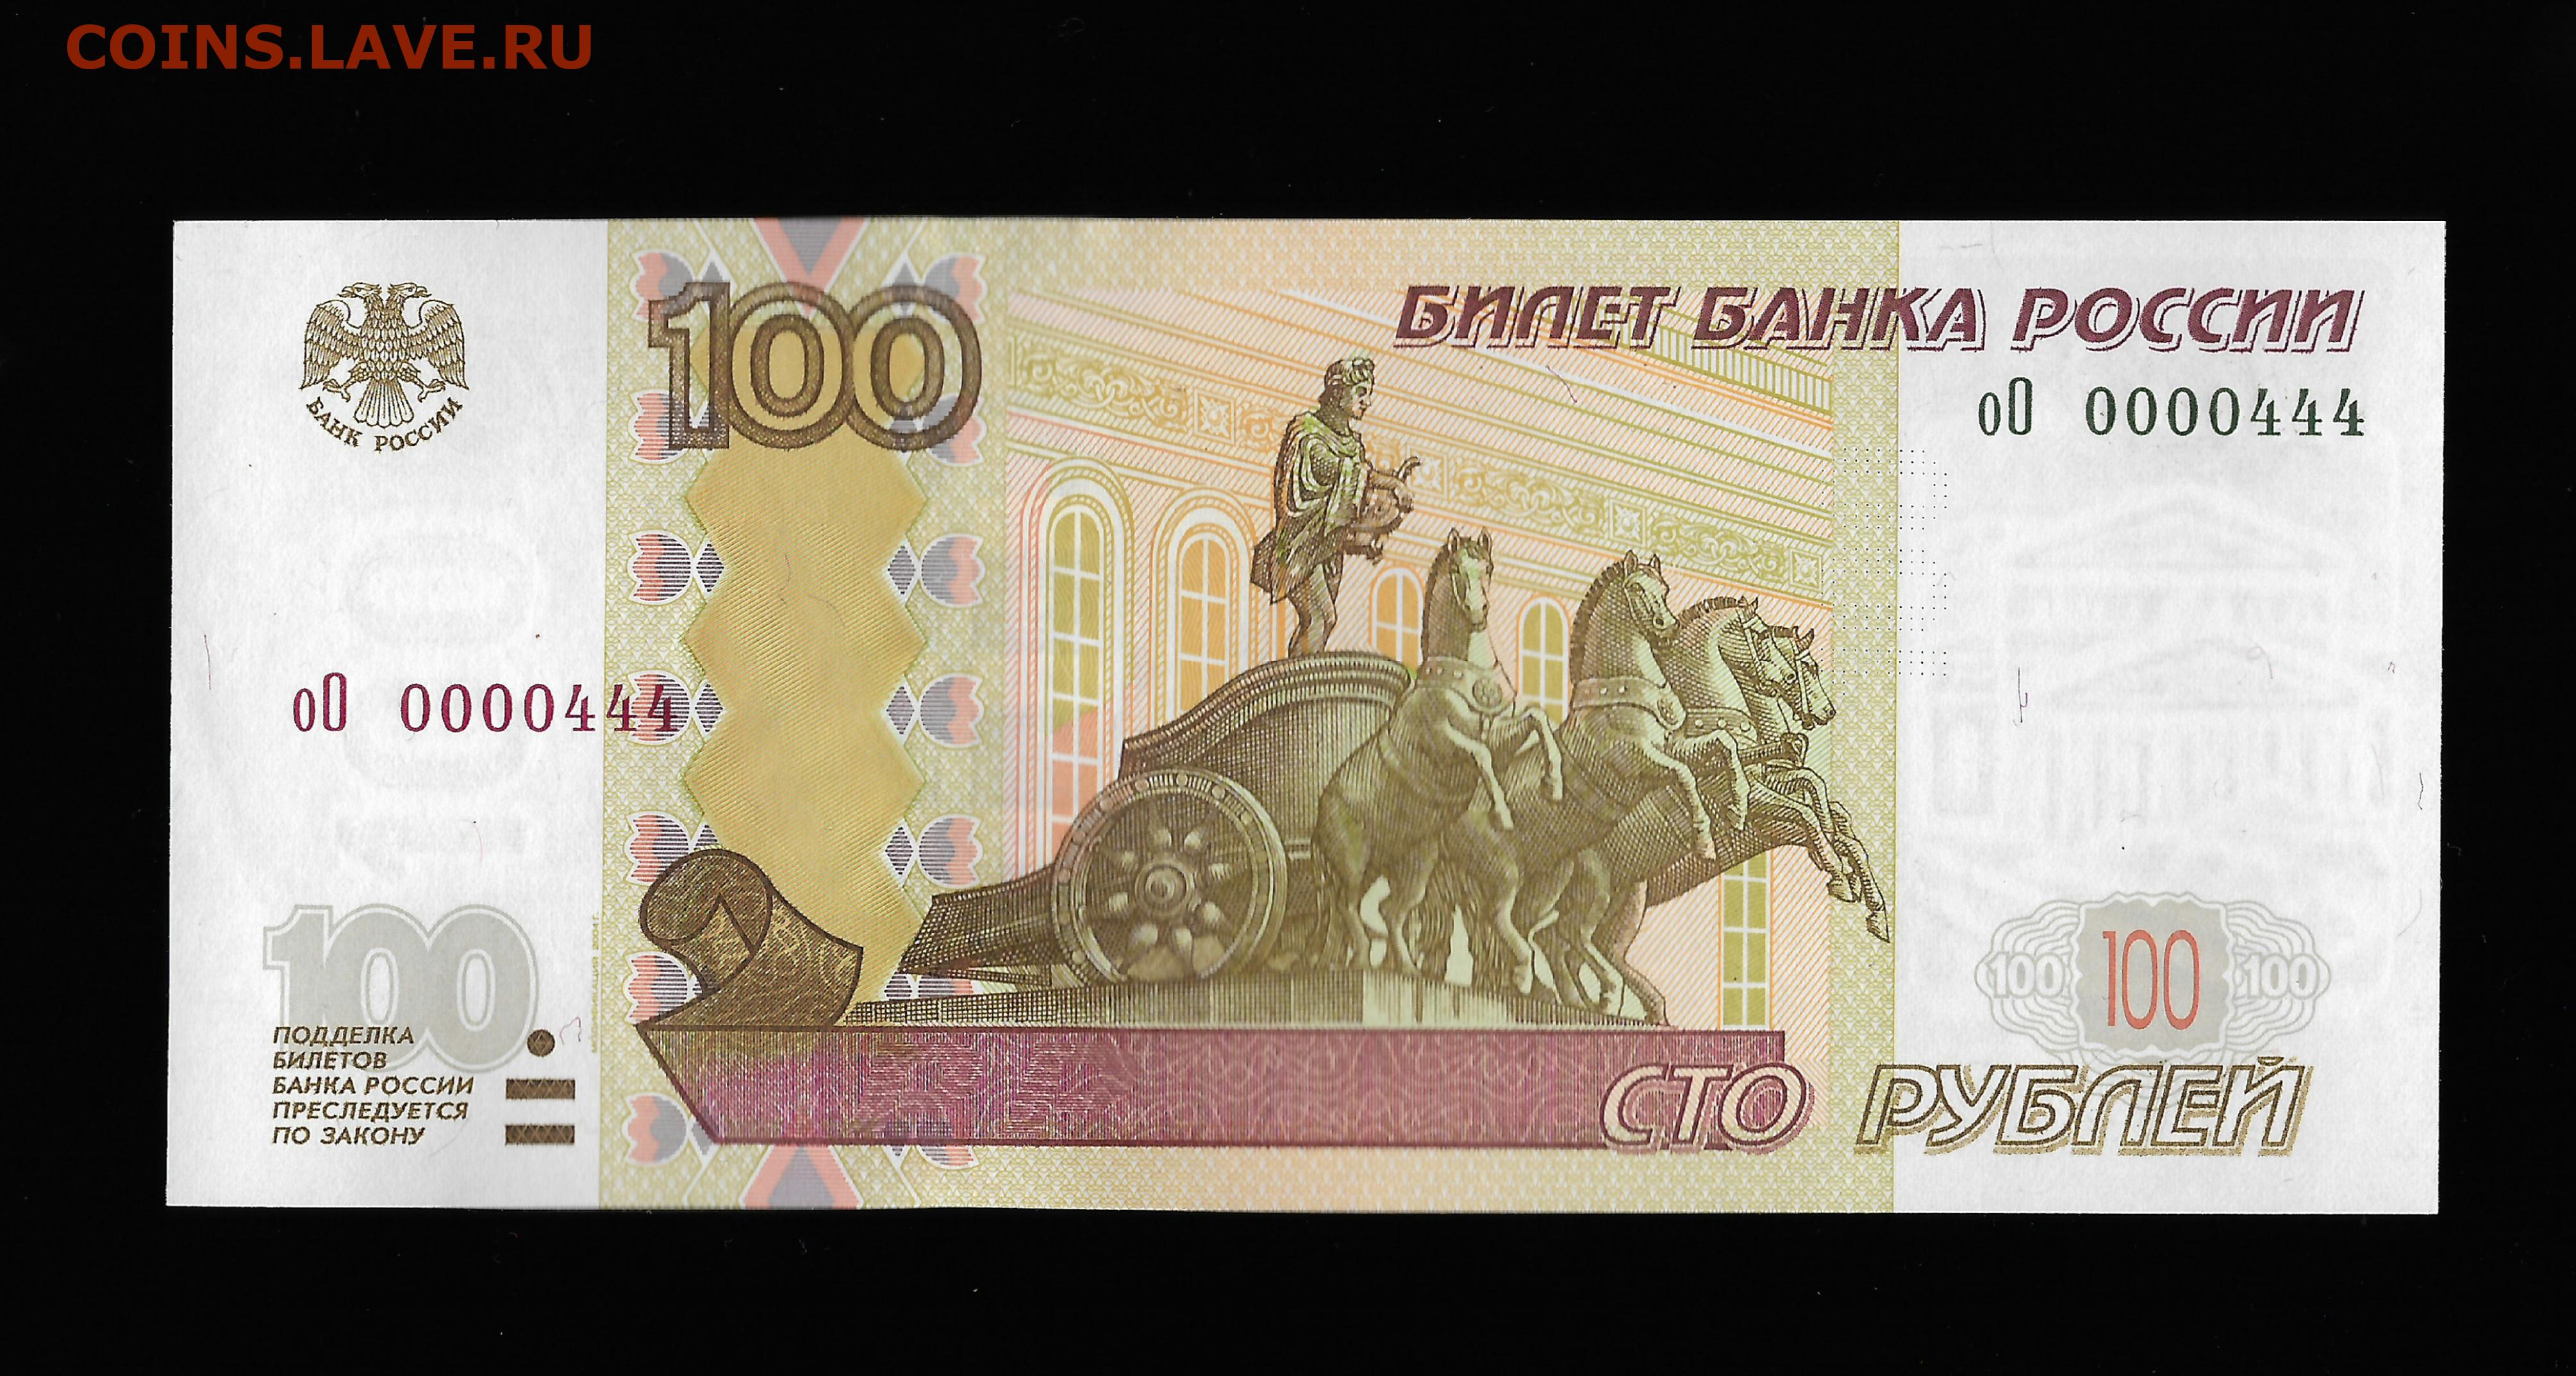 19 300 в рублях